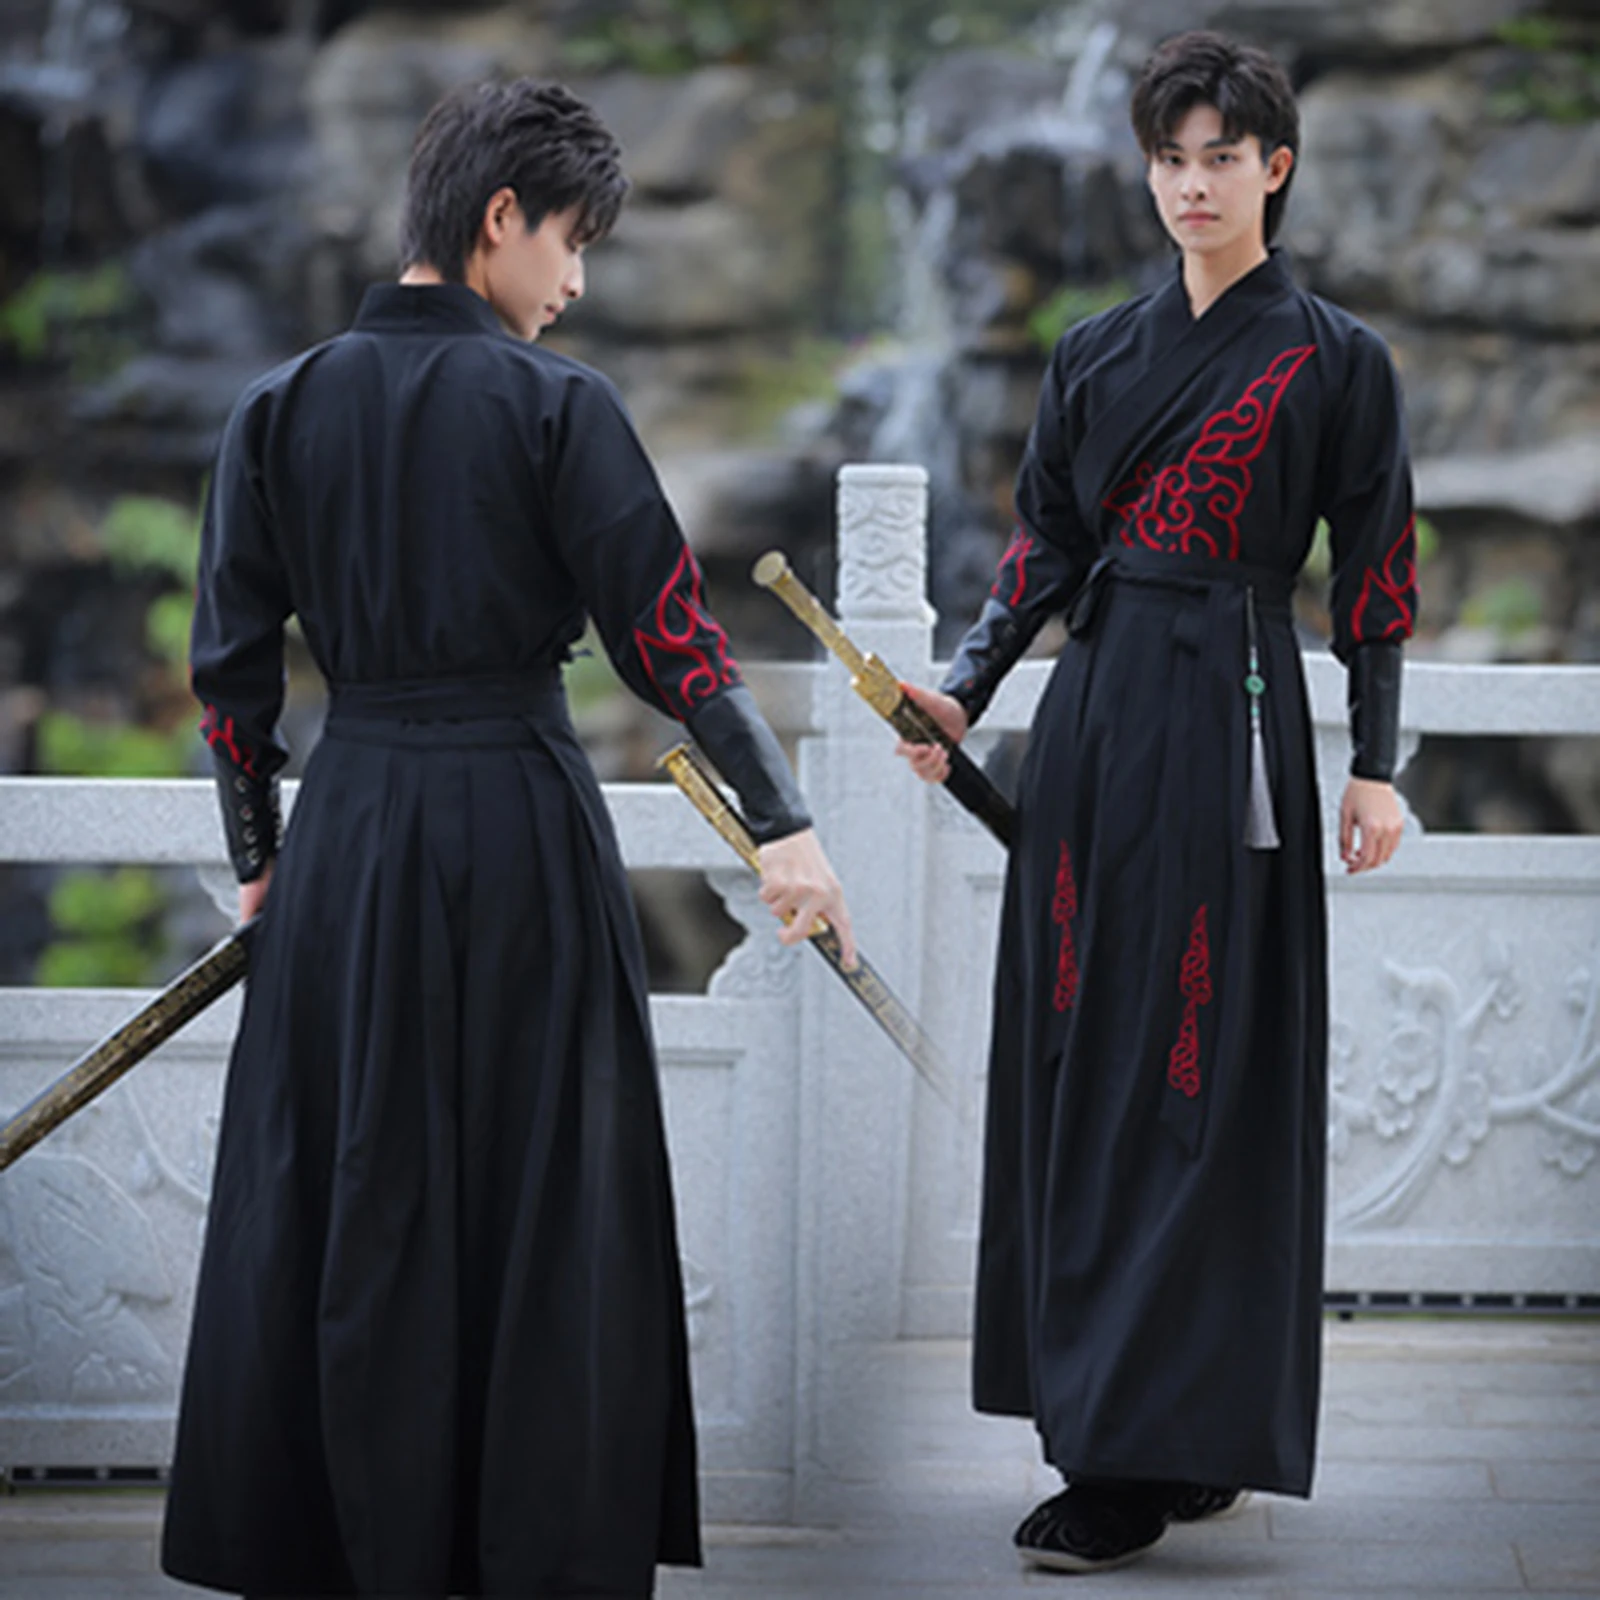 

Традиционное платье ханьфу большого размера, мужской костюм династии Хань, костюм для пары, китайская одежда для древнего меча, мужское кимоно, костюм Тан